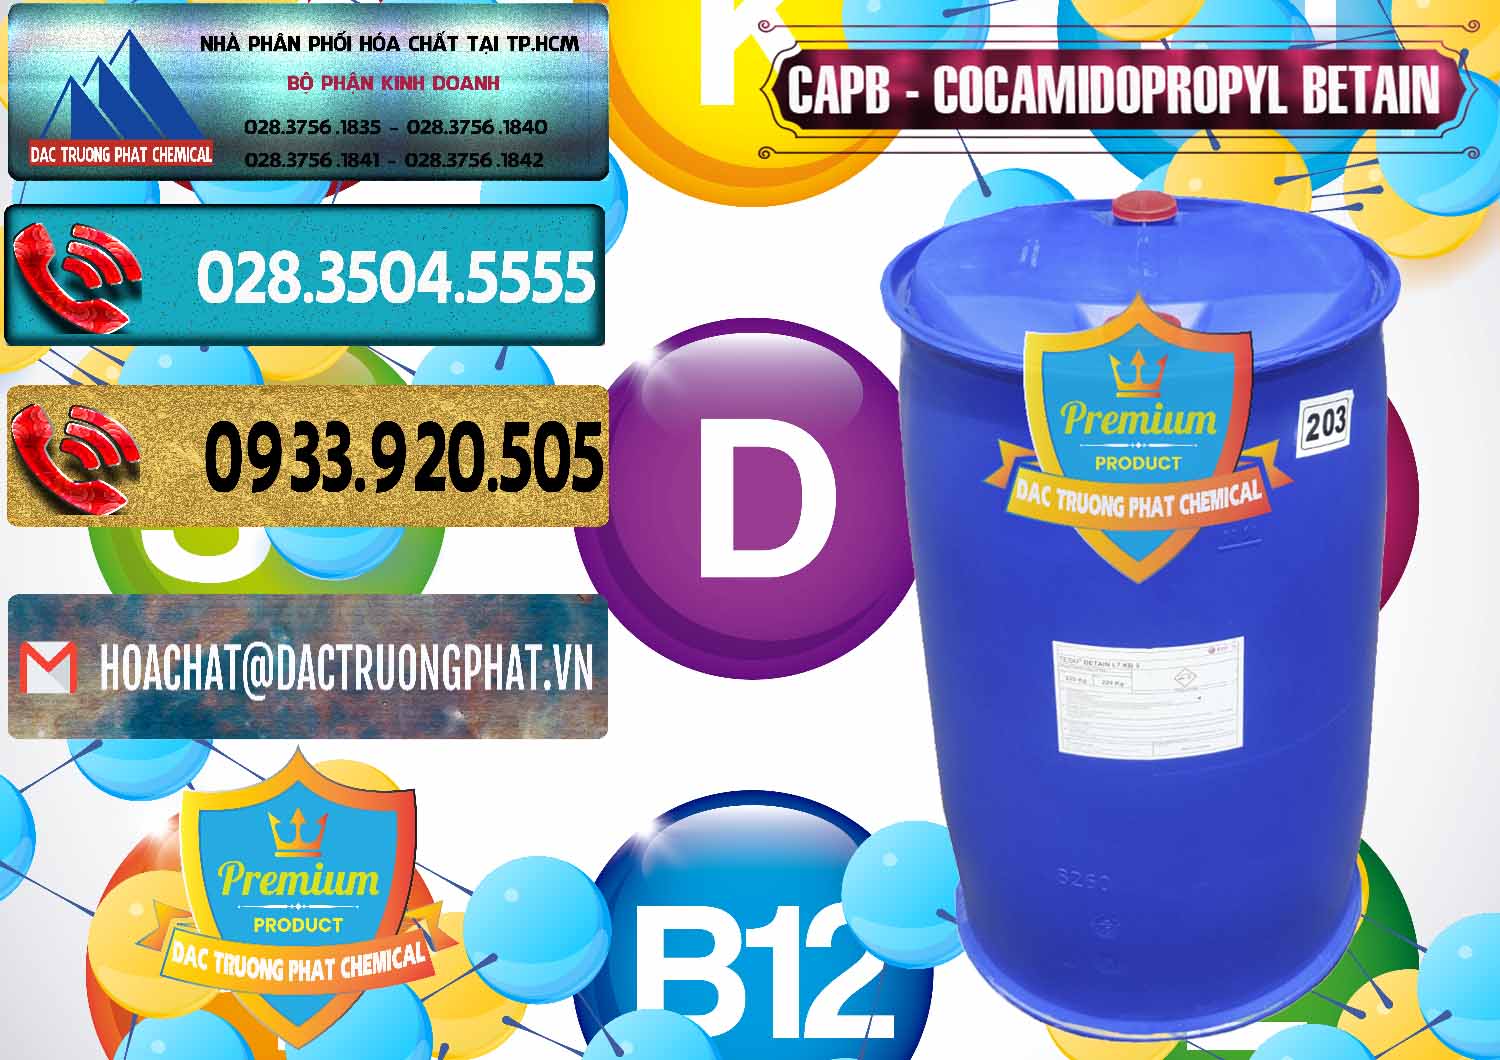 Nhập khẩu & bán Cocamidopropyl Betaine - CAPB Tego Indonesia - 0327 - Đơn vị chuyên cung ứng ( phân phối ) hóa chất tại TP.HCM - hoachatdetnhuom.com